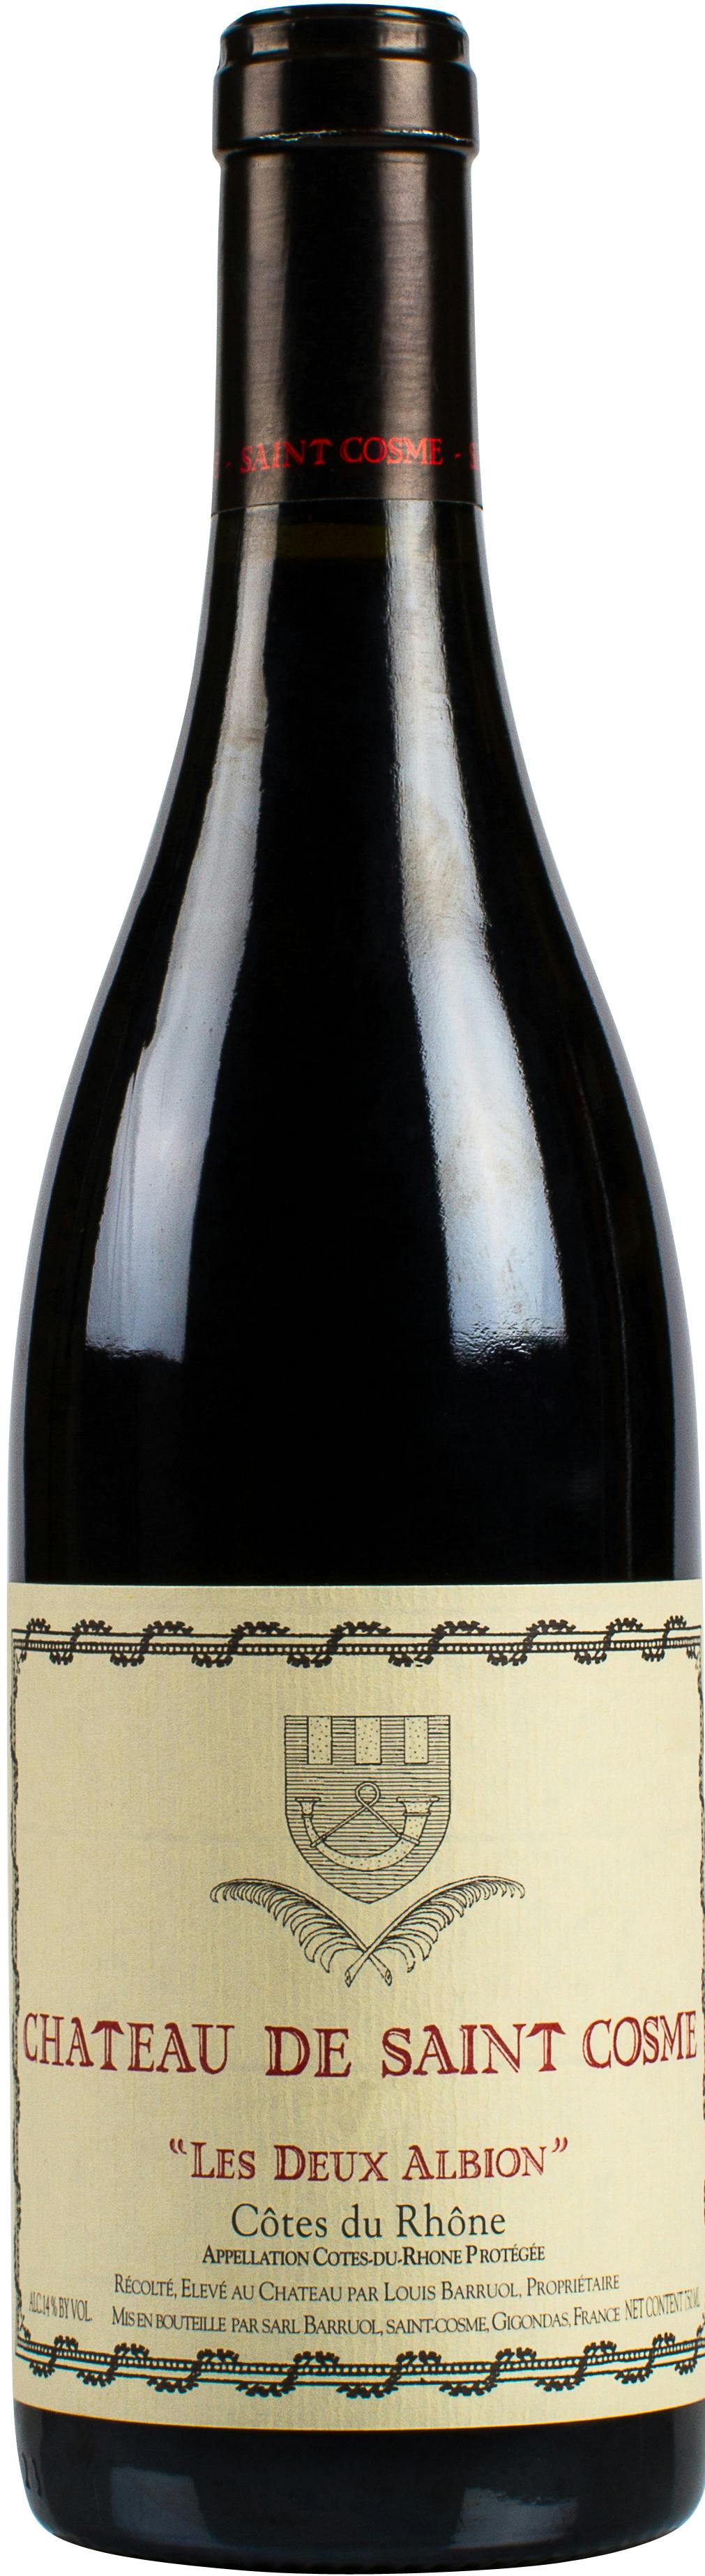 Moët & Chandon Dom Perignon Rosé 2006 750ml - Argonaut Wine & Liquor